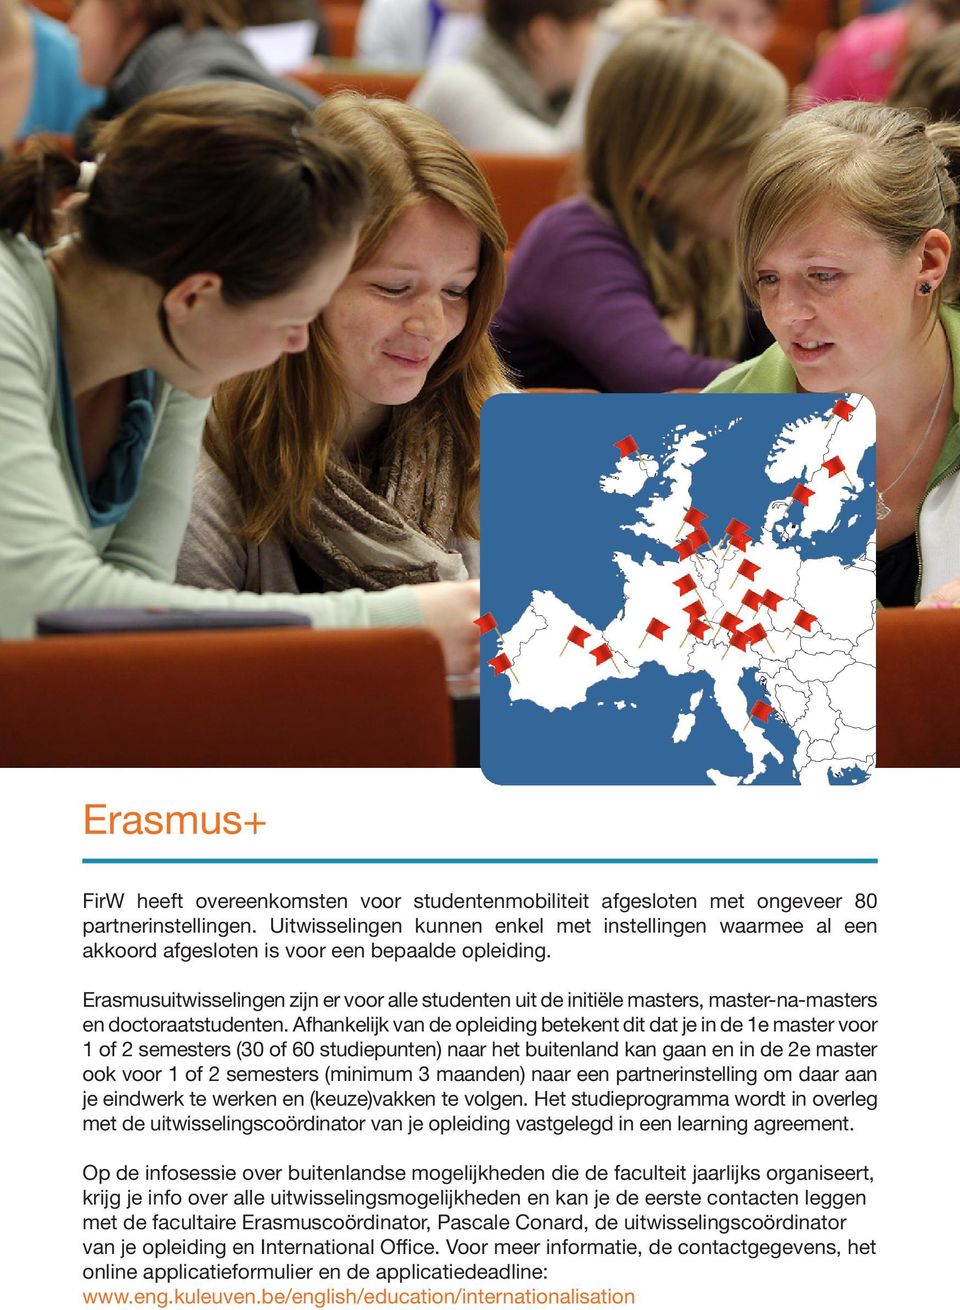 Erasmusuitwisselingen zijn er voor alle studenten uit de initiële masters, master-na-masters en doctoraatstudenten.